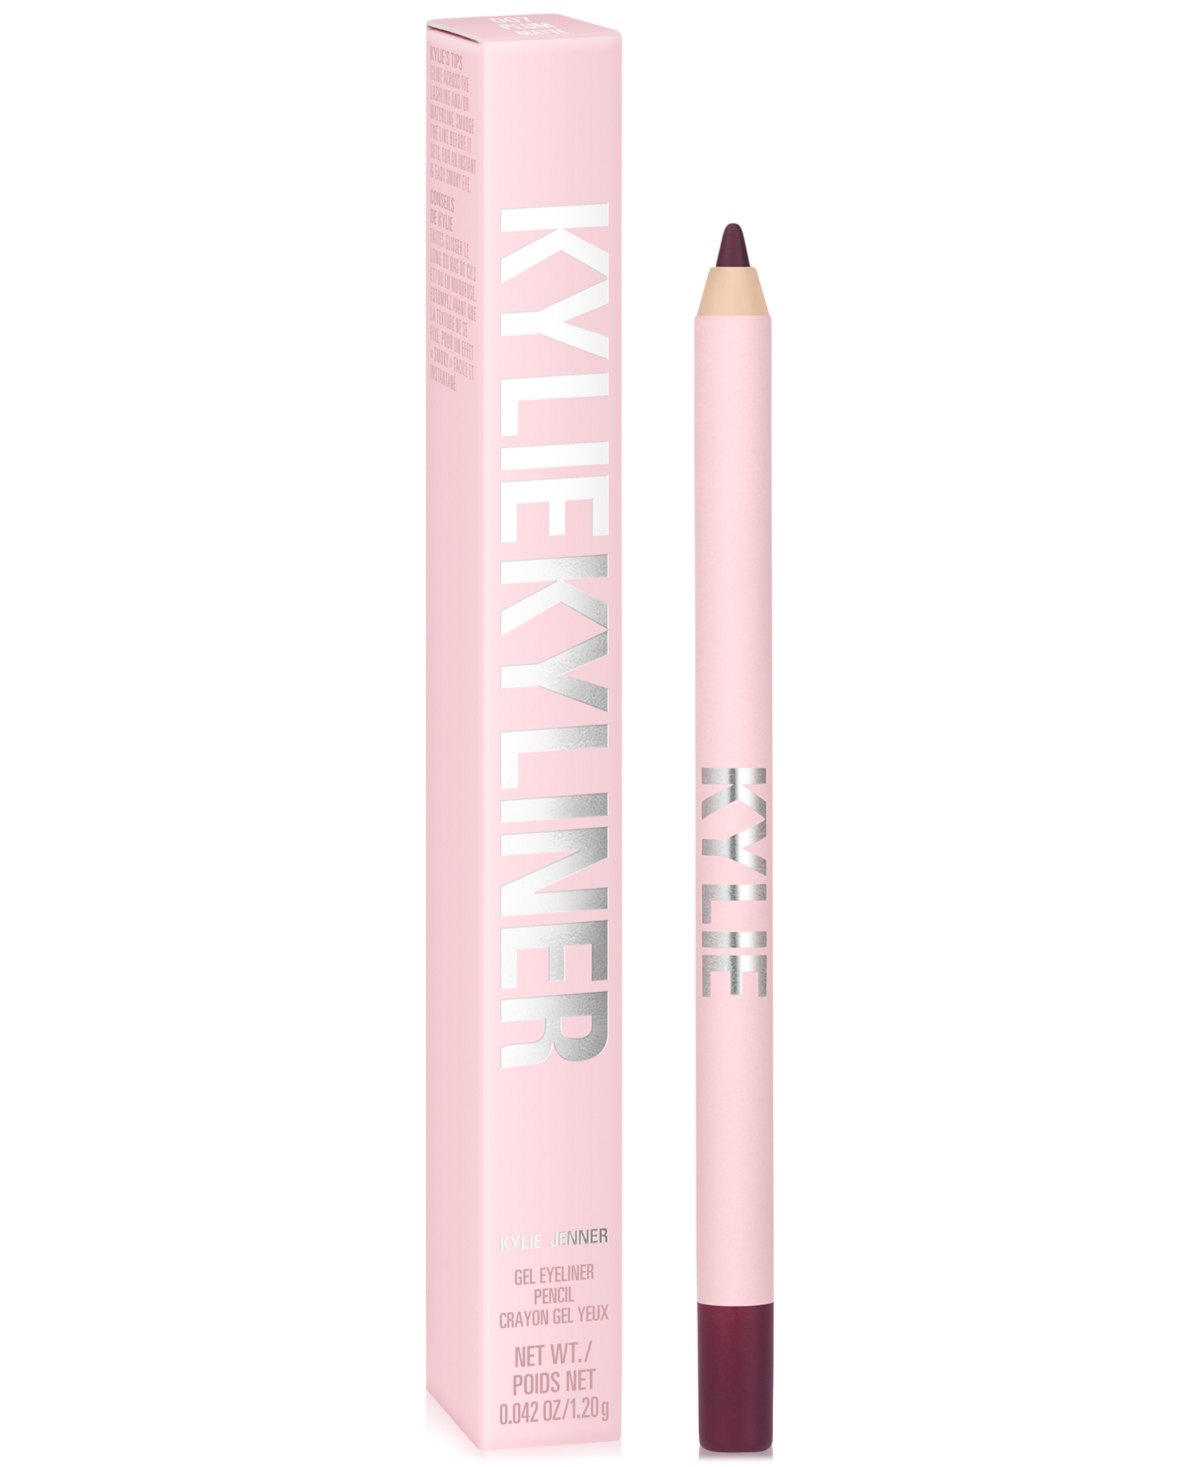 Kylie Cosmetics Kyliner Gel Eyeliner Pencil In Matte Plum